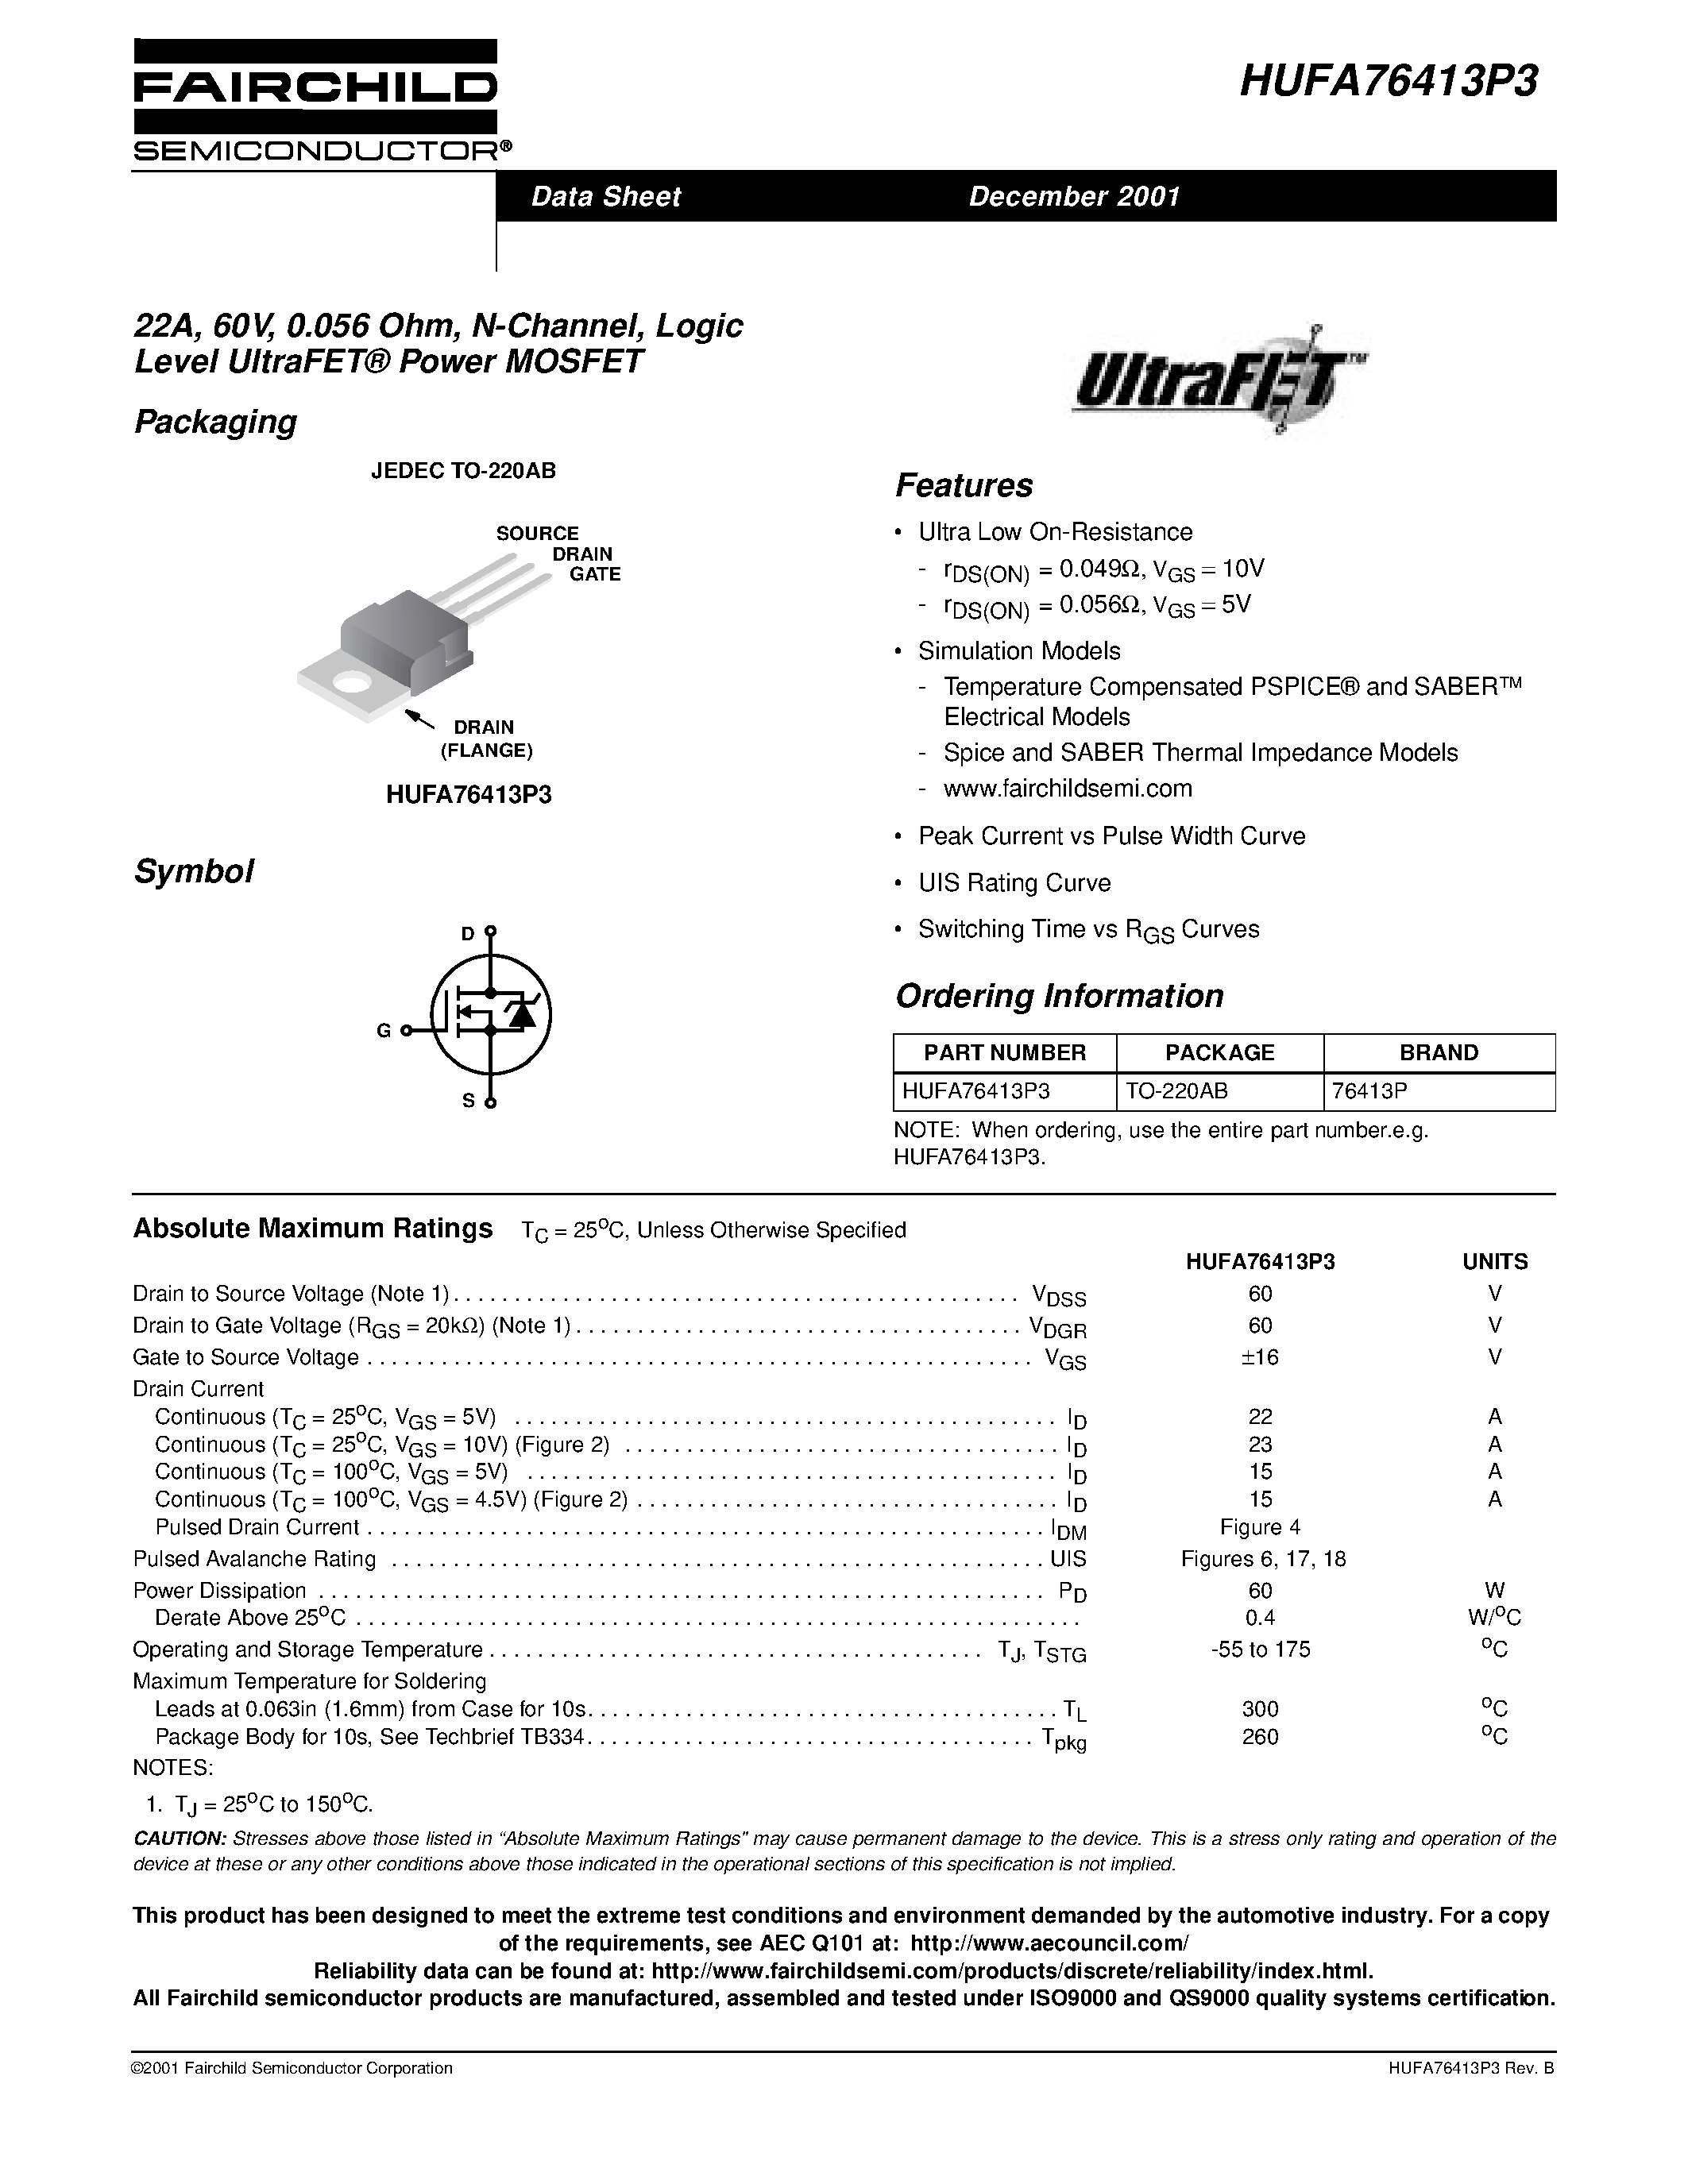 Даташит HUFA76413P3 - 22A/ 60V/ 0.056 Ohm/ N-Channel/ Logic Level UltraFET Power MOSFET страница 1